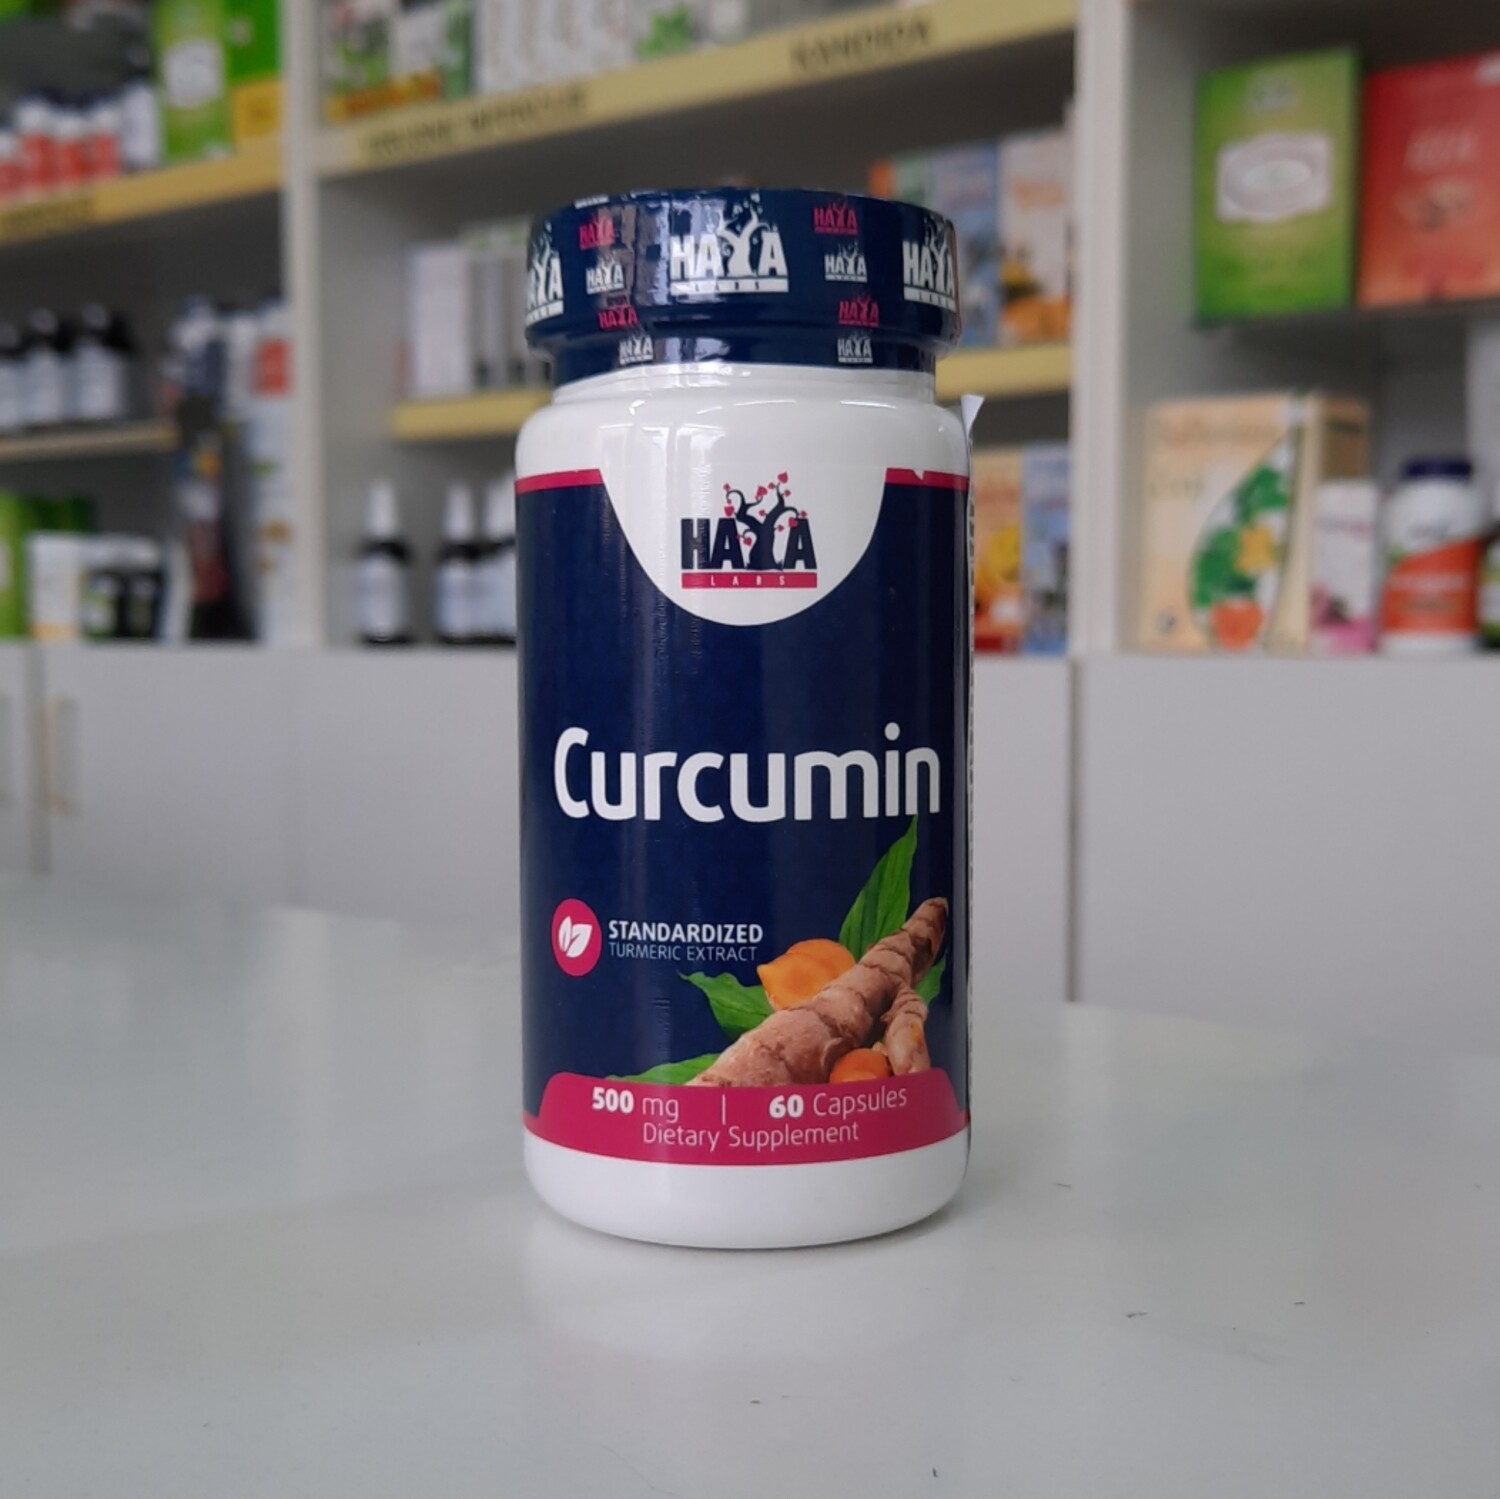 Haya curcumin 500 mg 60 cps